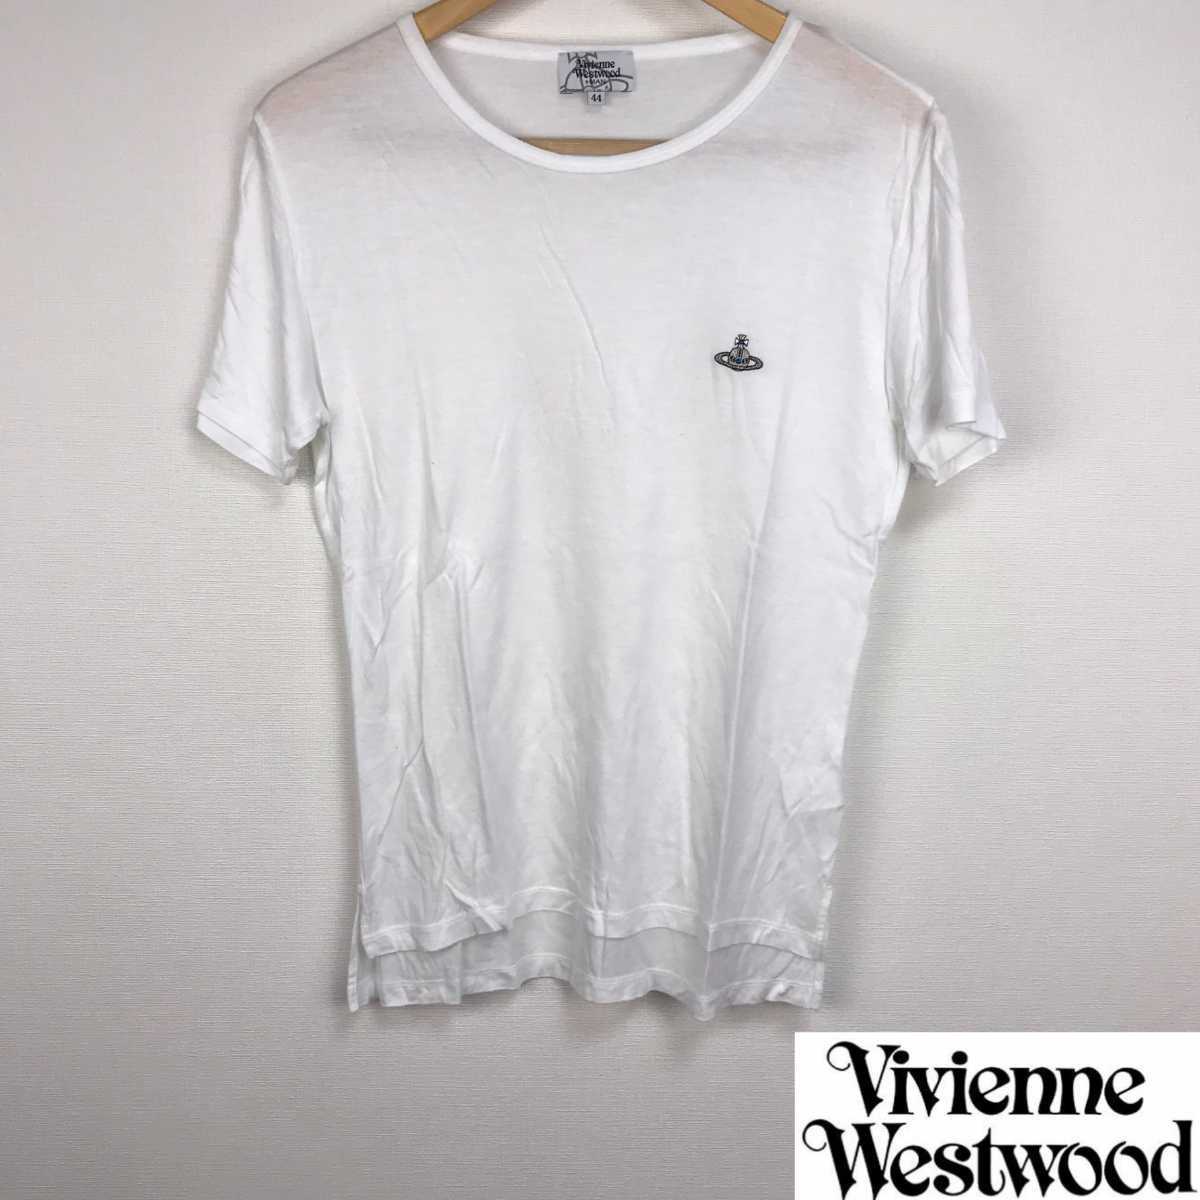 美品 ヴィヴィアンウエストウッドマン 半袖Tシャツ ホワイト サイズ44 返品可能 送料無料